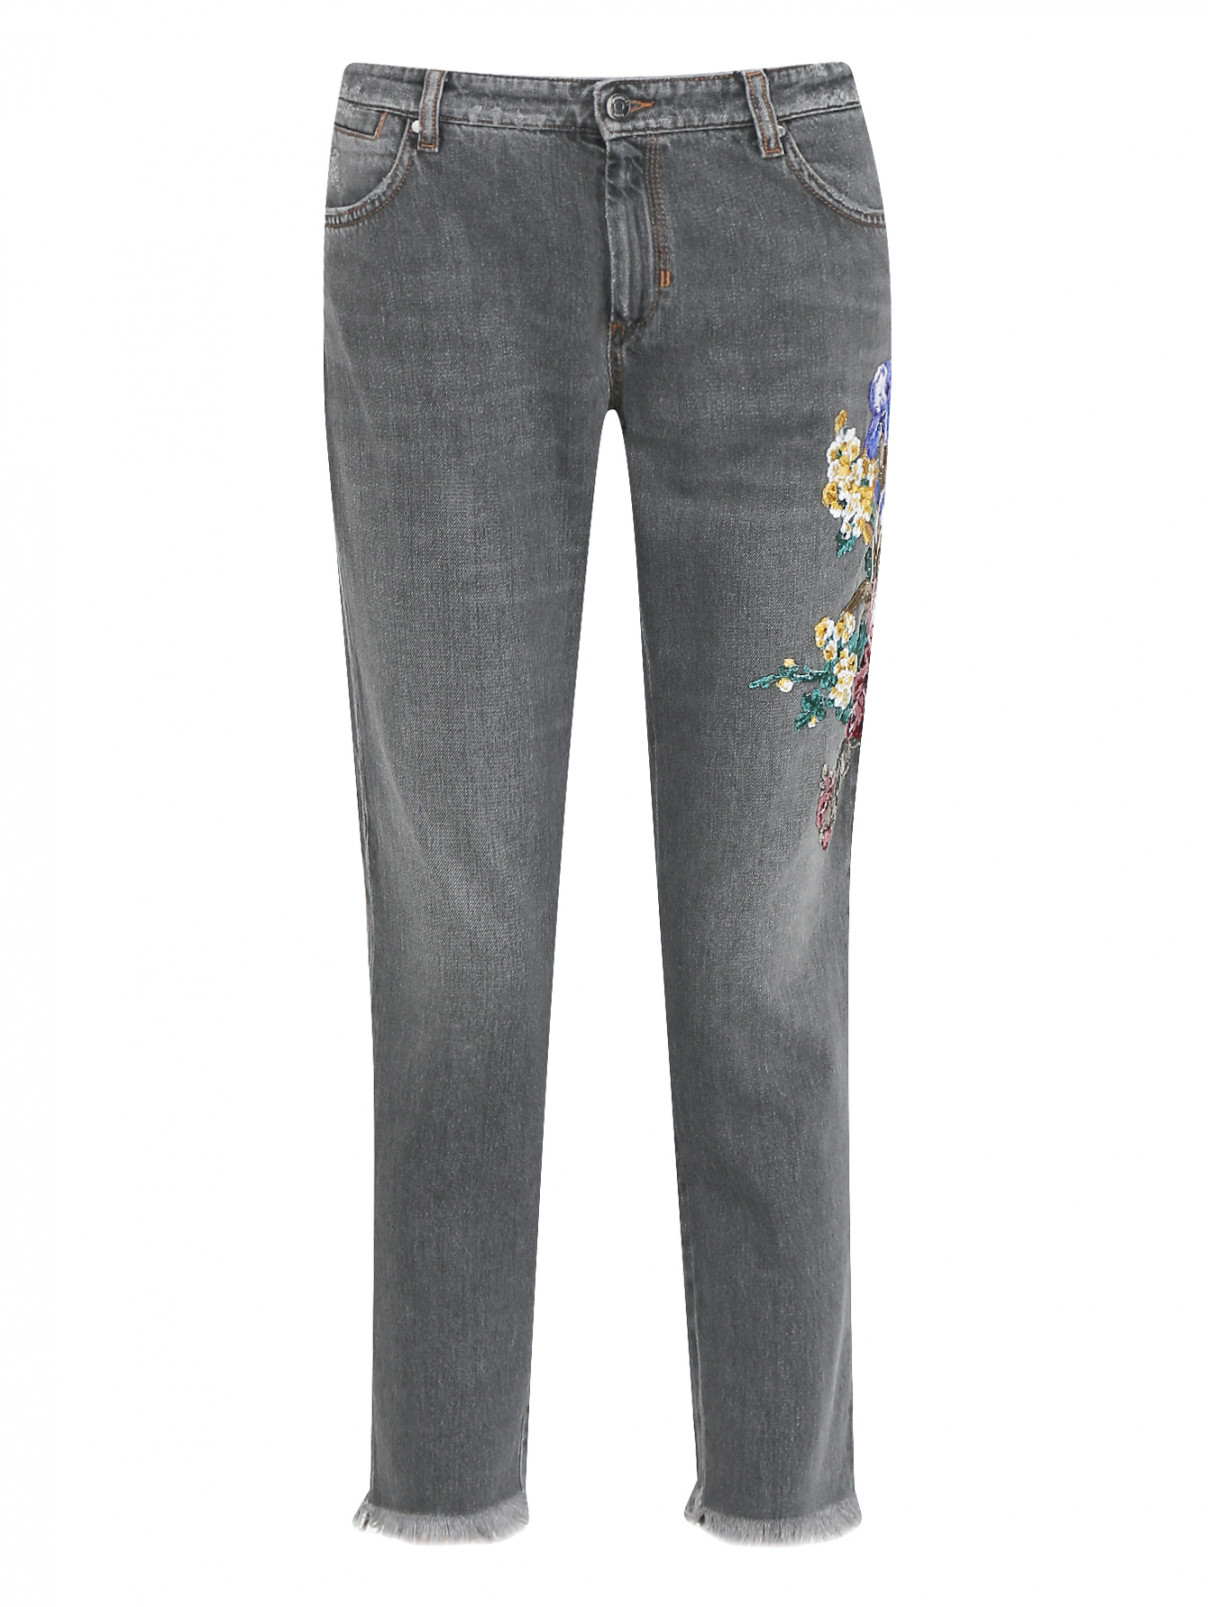 Укороченные джинсы с аппликацией Sportmax Code  –  Общий вид  – Цвет:  Серый